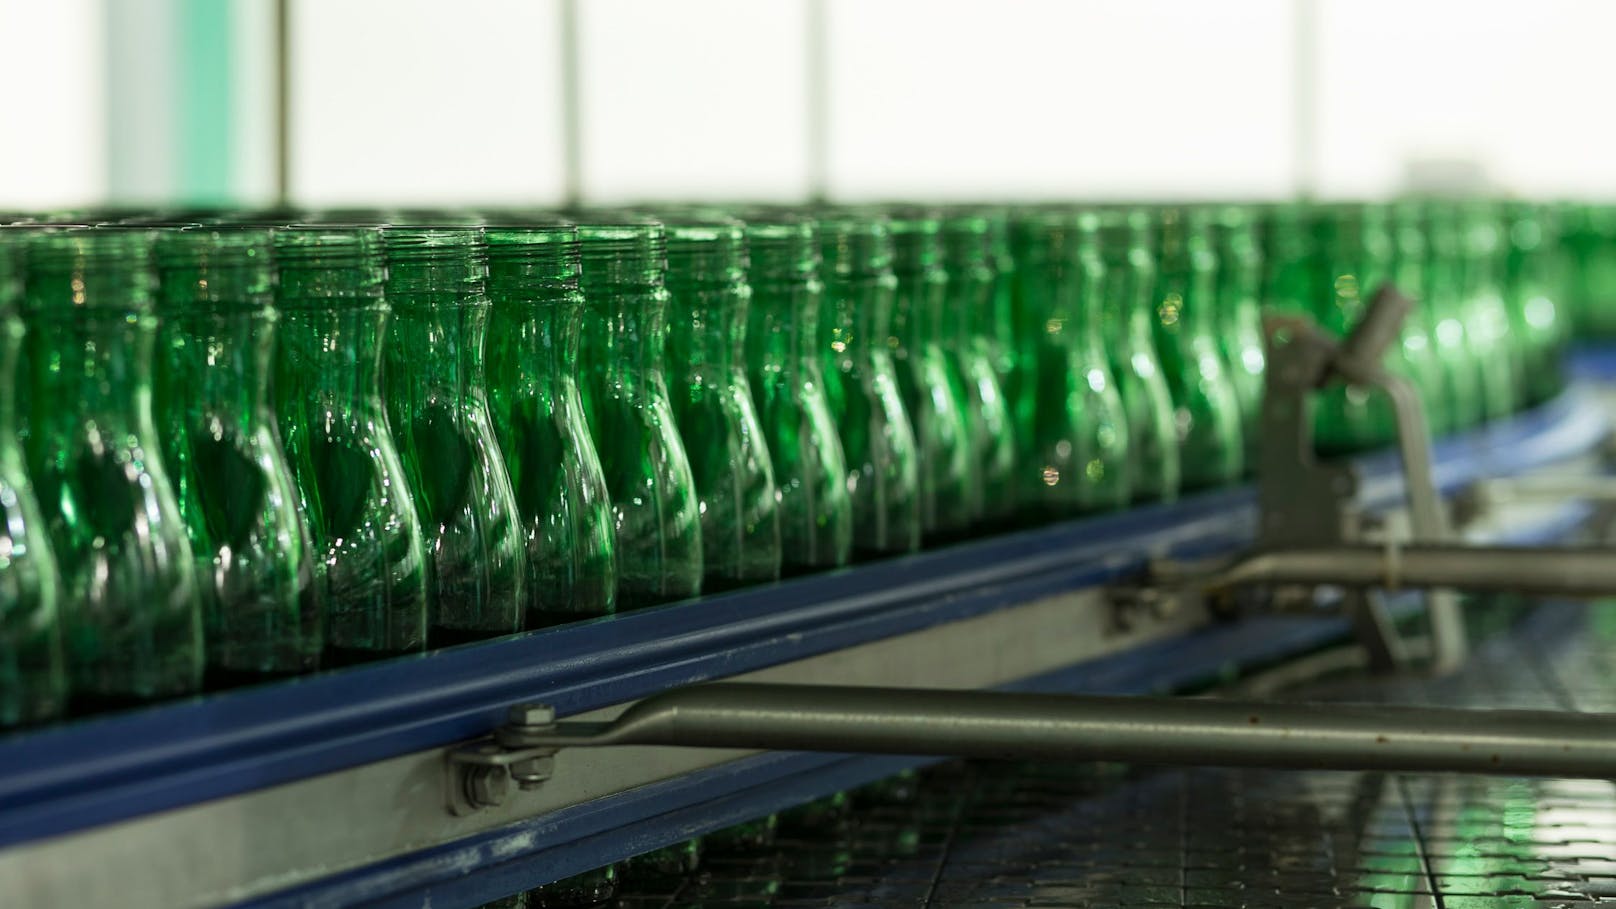 Getränke-Affäre in Kroatien: Jetzt spricht Coca-Cola